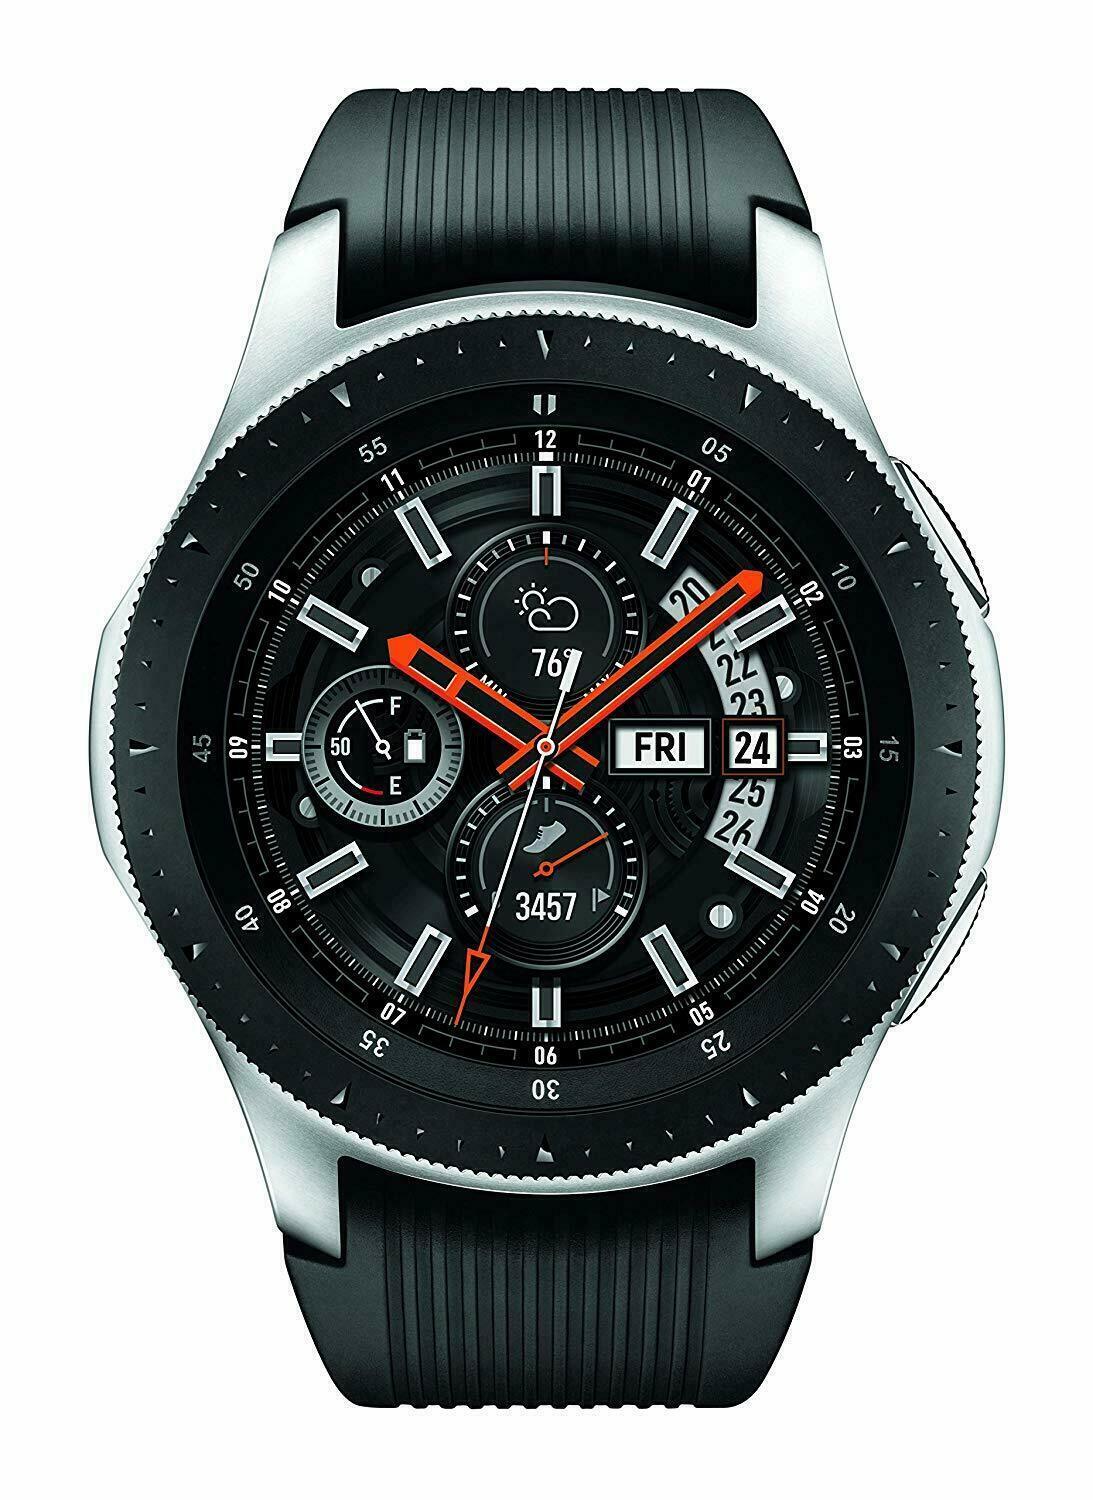 Galaxy watch 46mm. Samsung Galaxy watch SM-r800. Samsung Galaxy watch 46mm. Samsung Galaxy watch 46мм. Samsung Galaxy watch 46mm Silver.